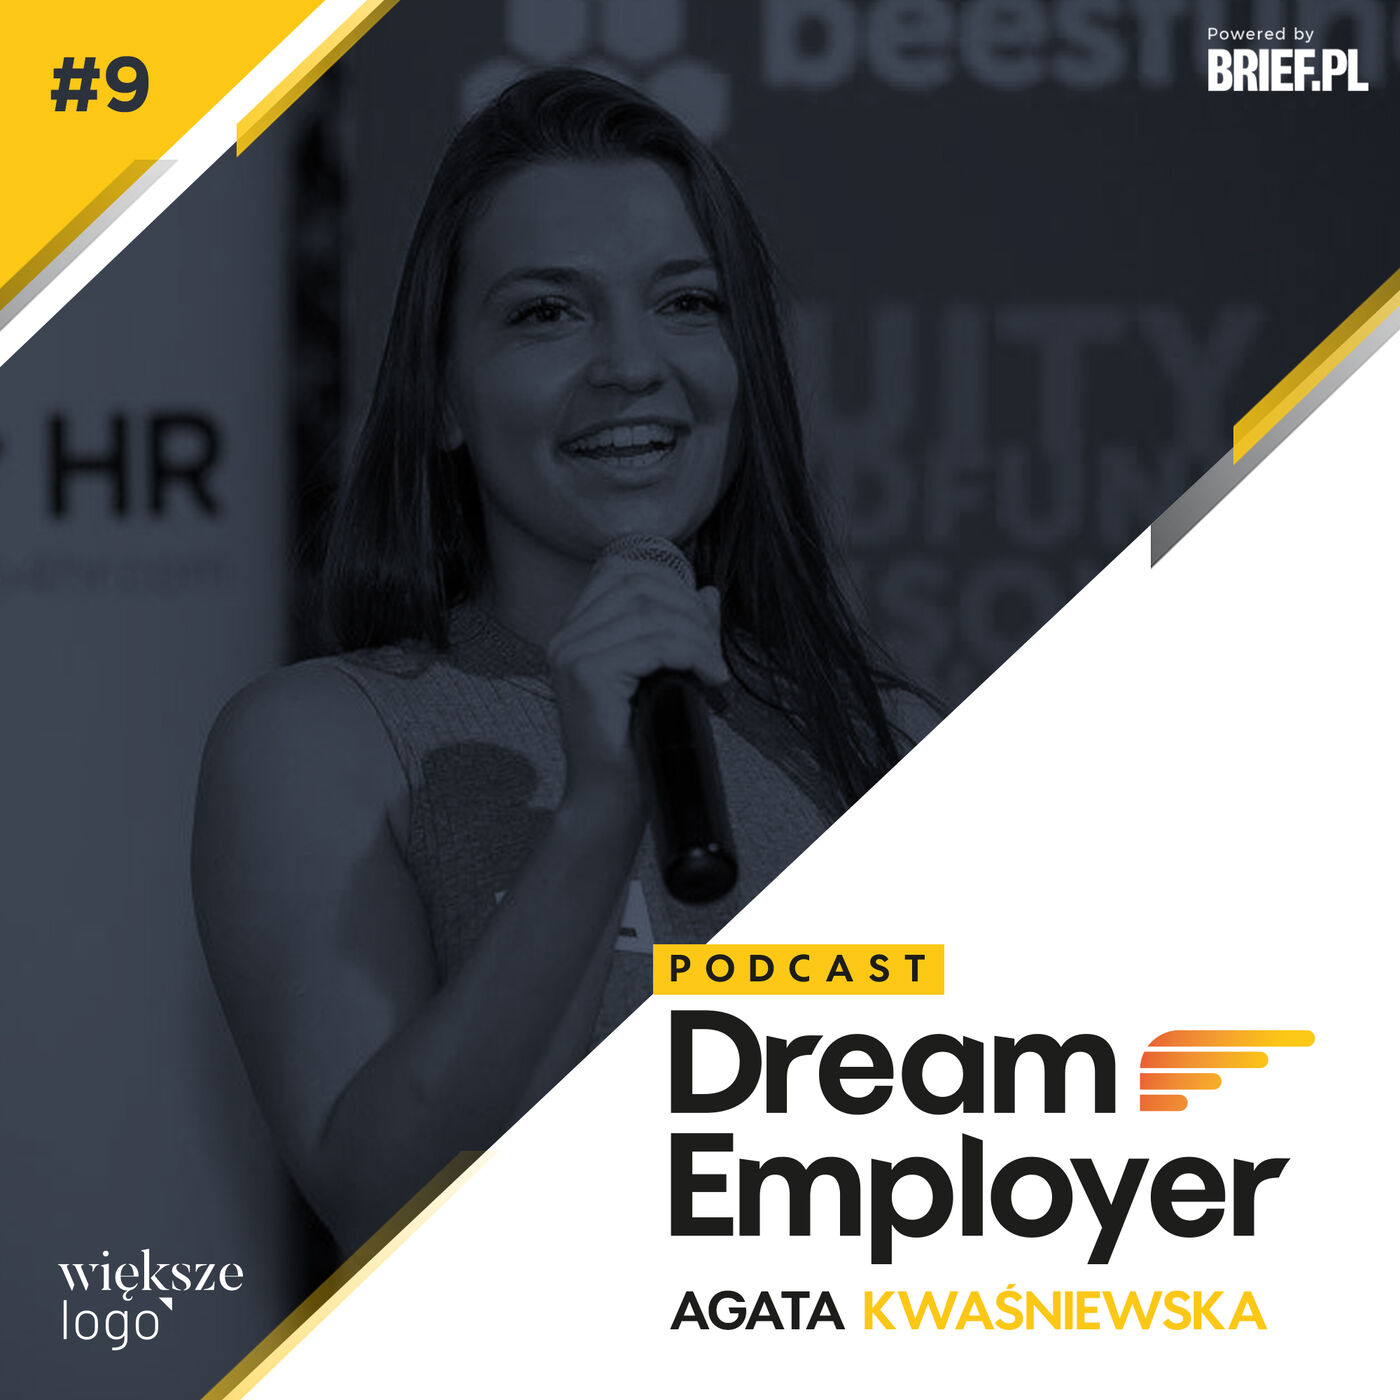 Podcast #DreamEmployer 09 – Agata Kwaśniewska, ReaktorWarsaw